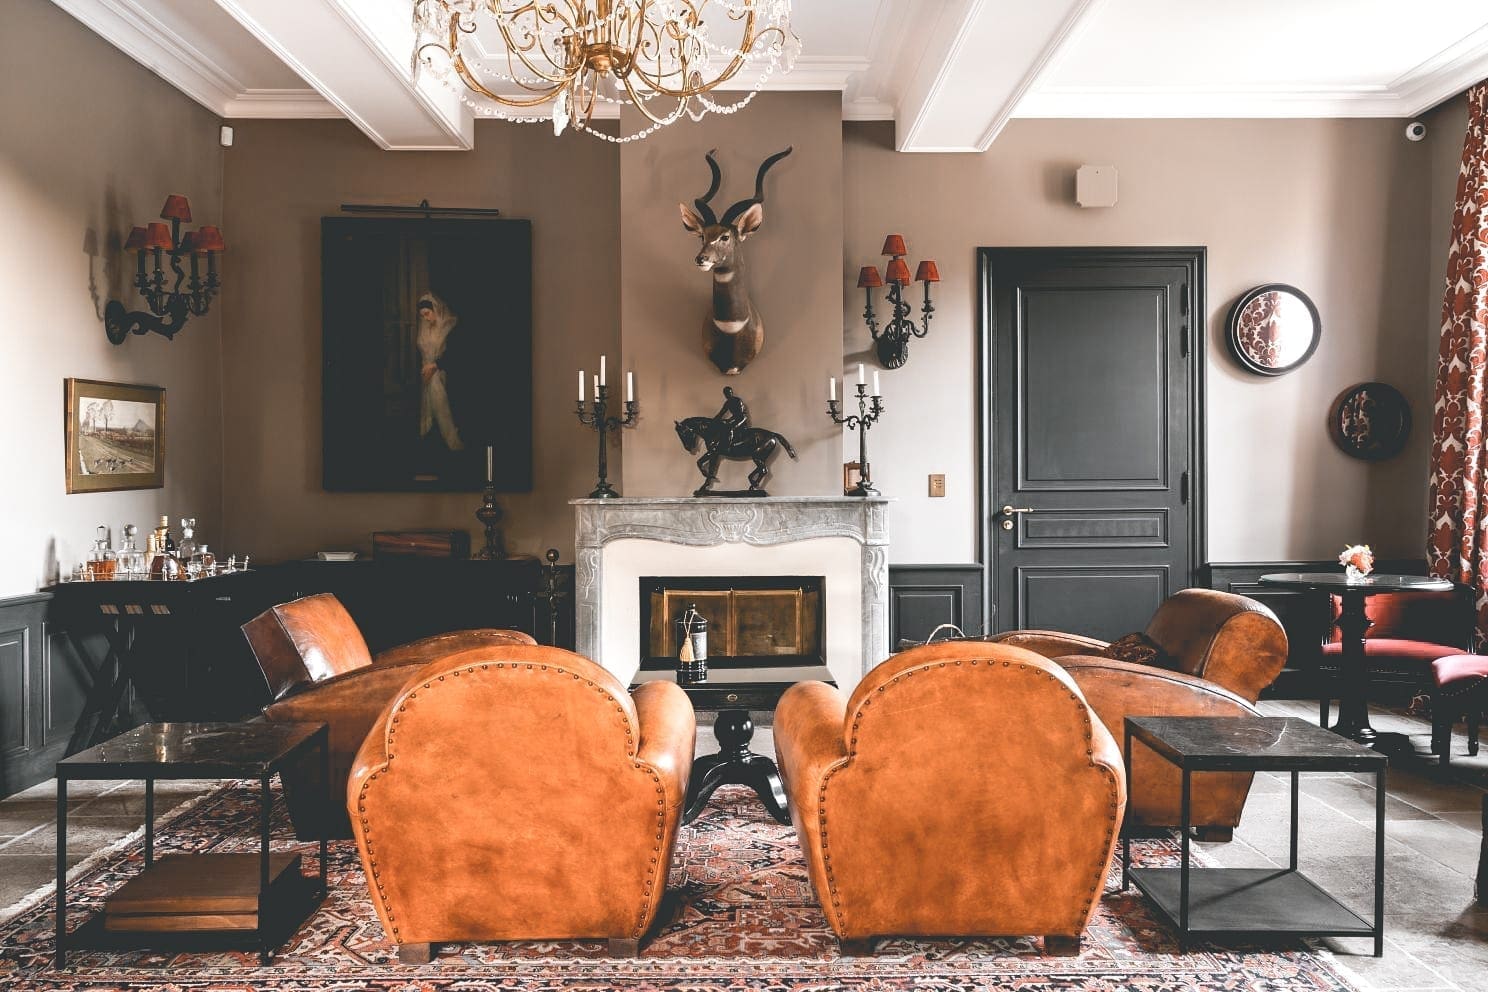 Airbnb finds: Frans kasteel, Airbnb Finds: een gigantisch Frans chateau met butler